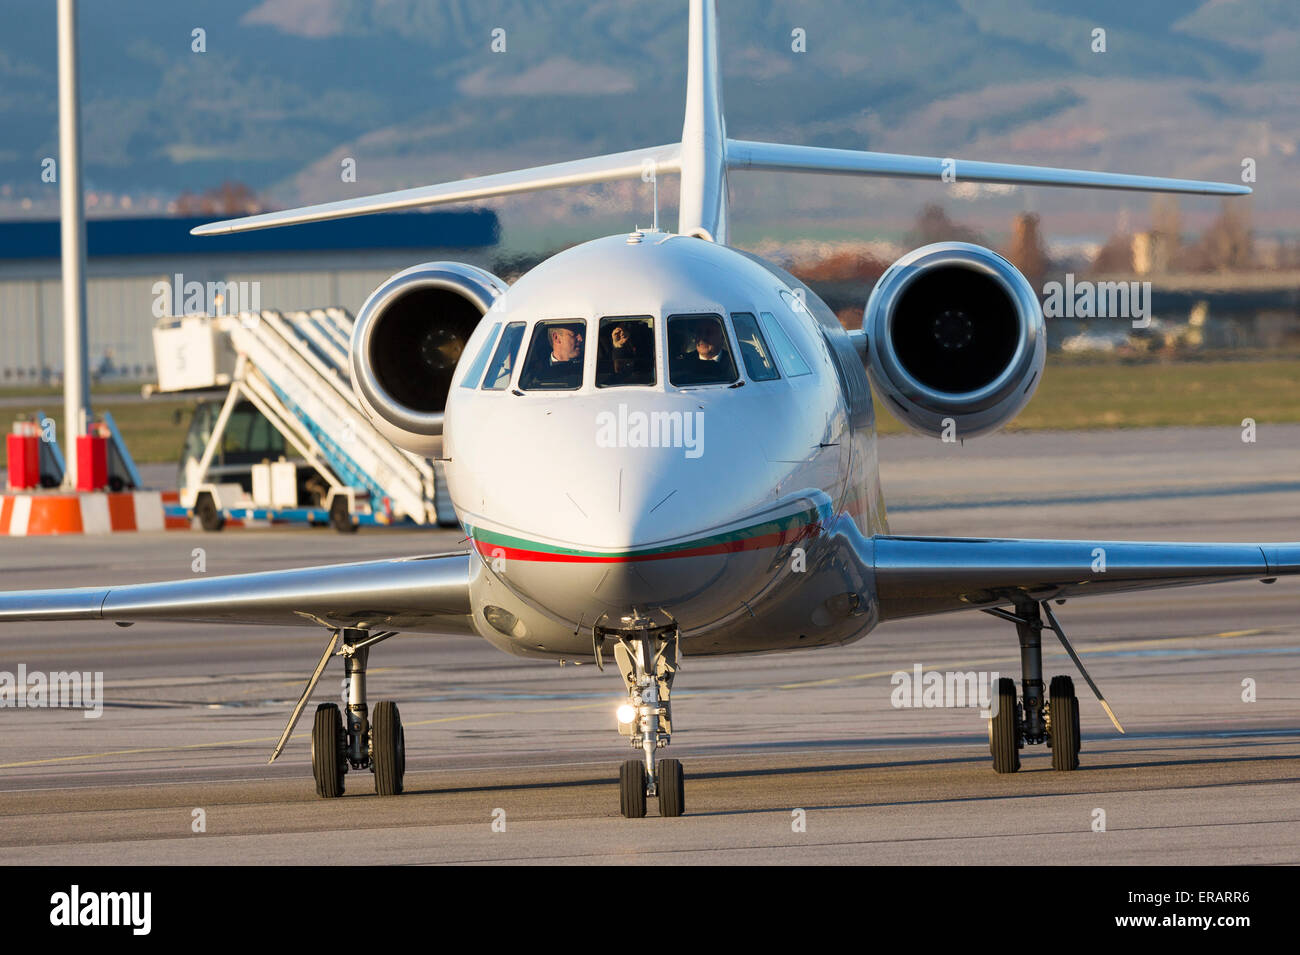 Sofia, Bulgarien - 11. April 2015: Die bulgarische Regierung Falcon Flugzeug auf dem Flughafen Sofia Piste nach der Landung bewegt. Stockfoto